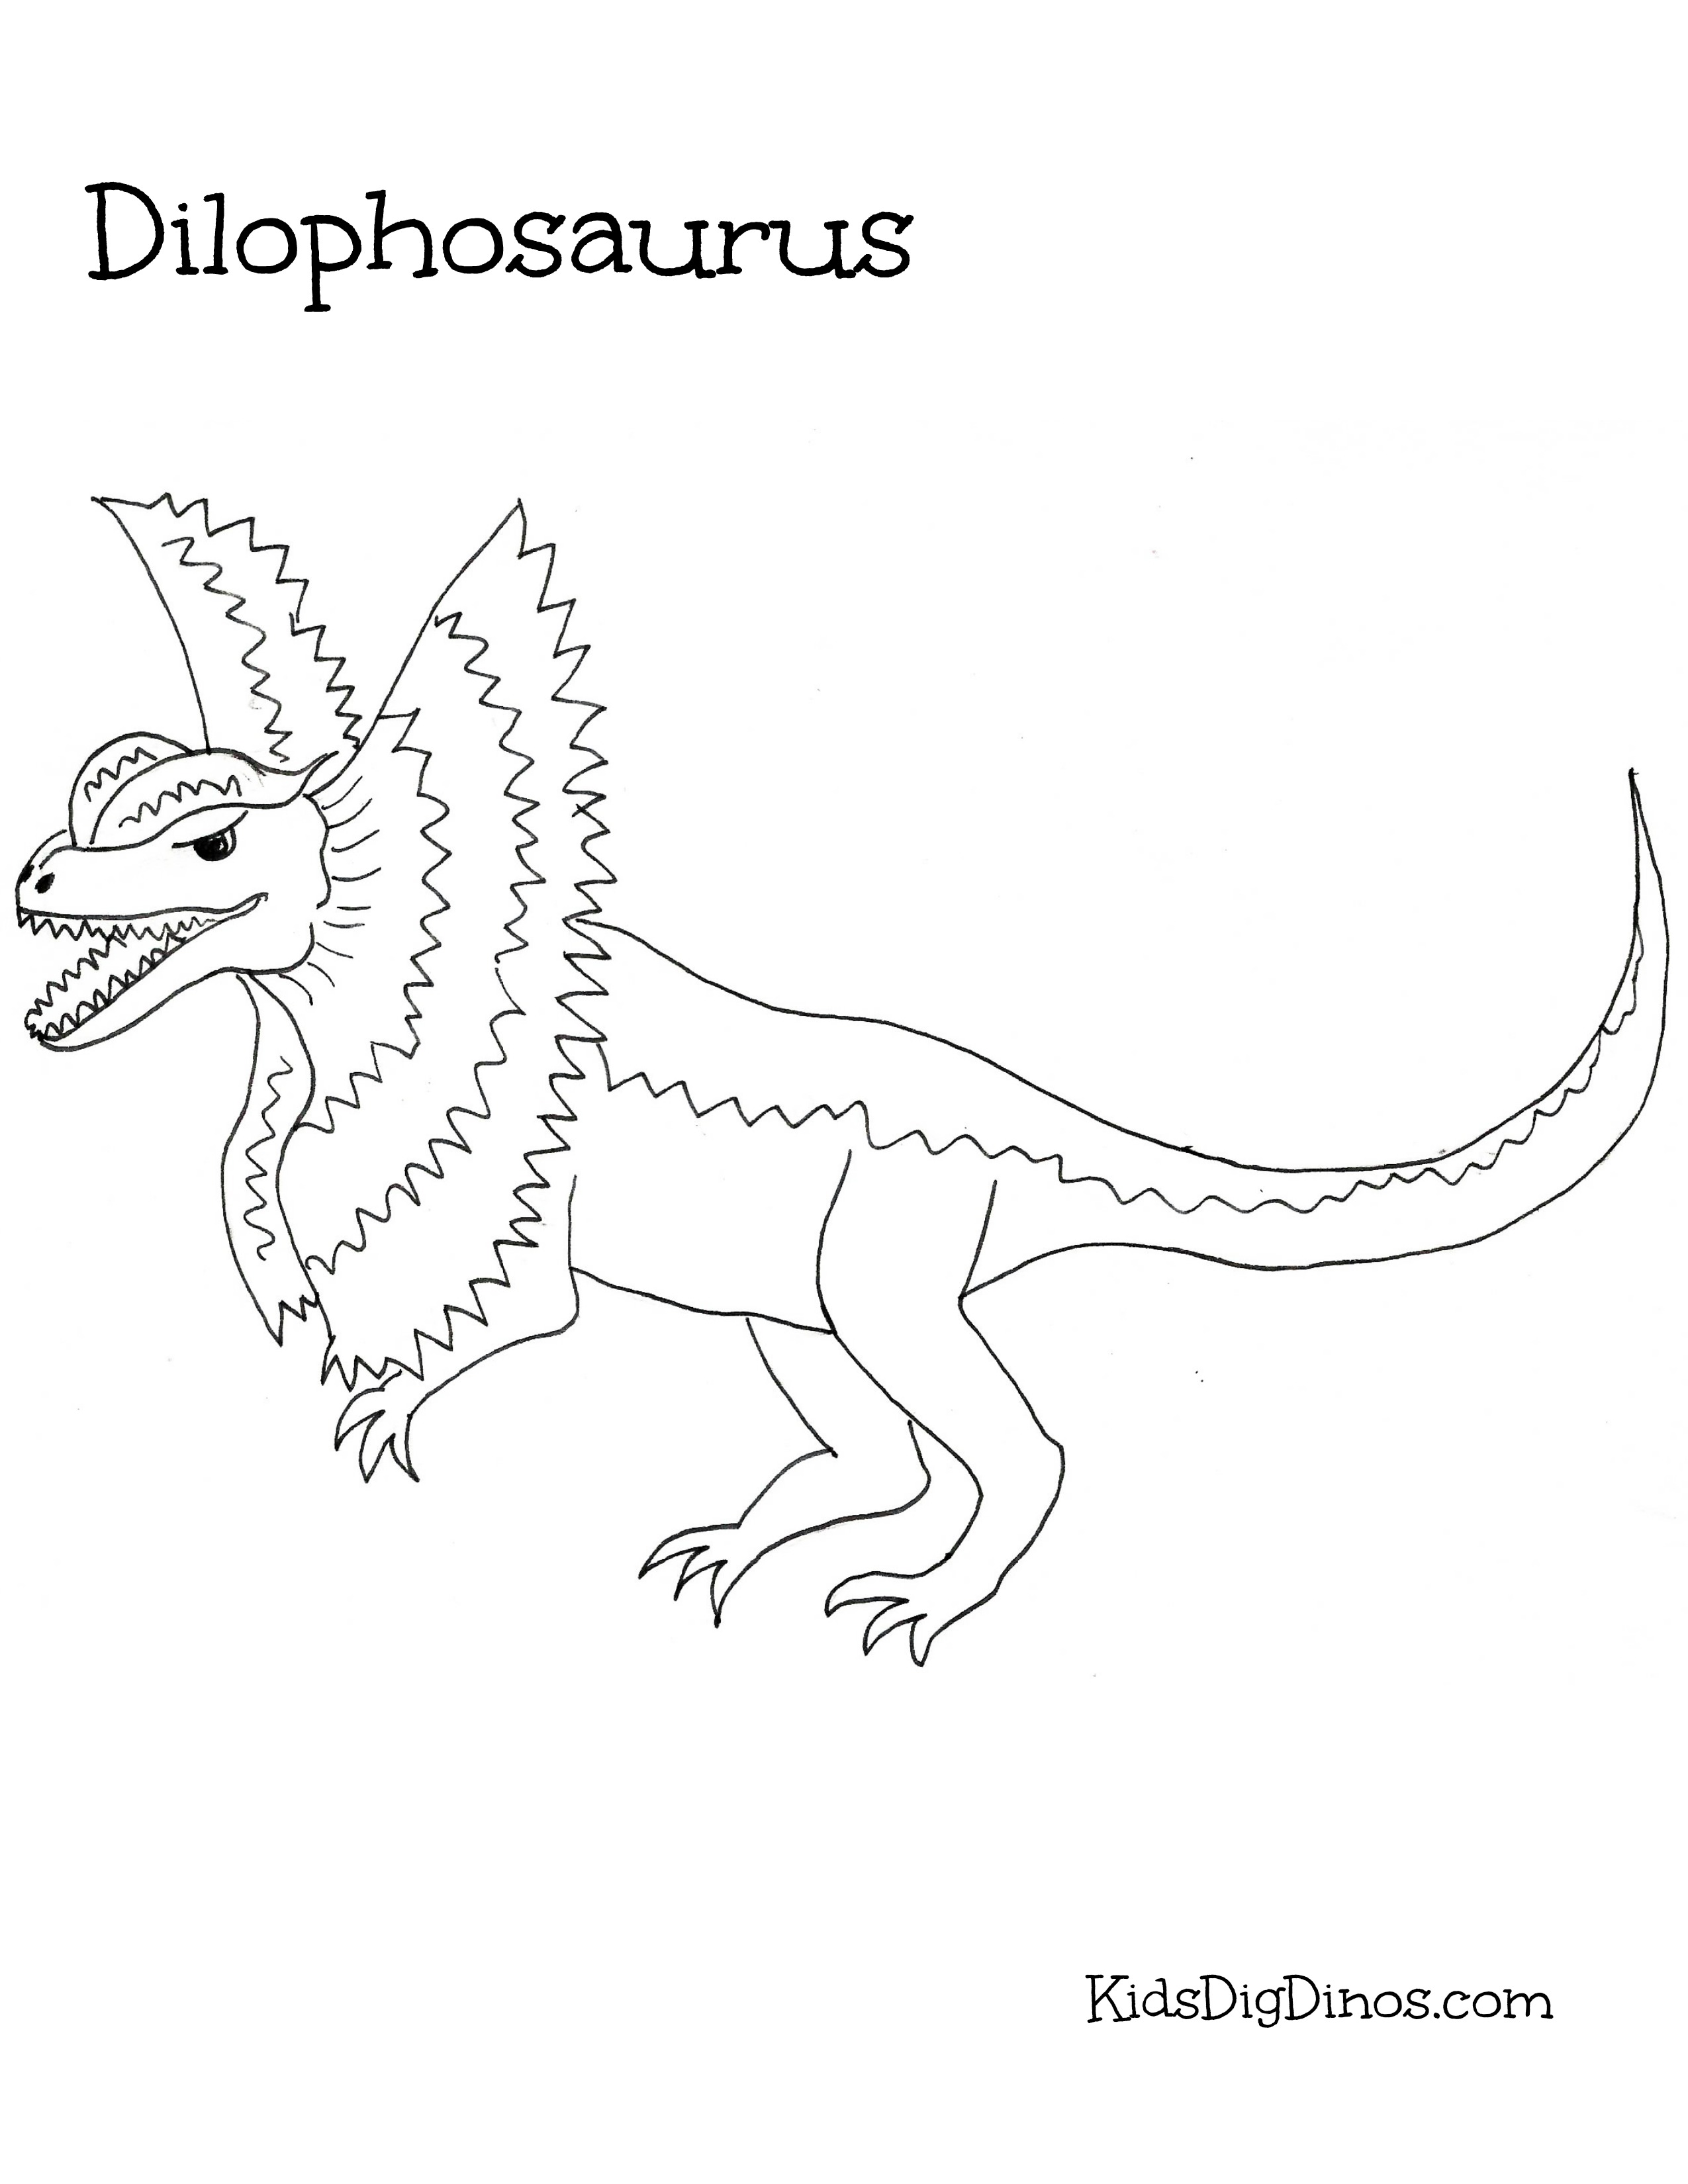 Kolorowanki Jurassic World Do Druku Dilophosaurus Kleurplaat Porn Sex